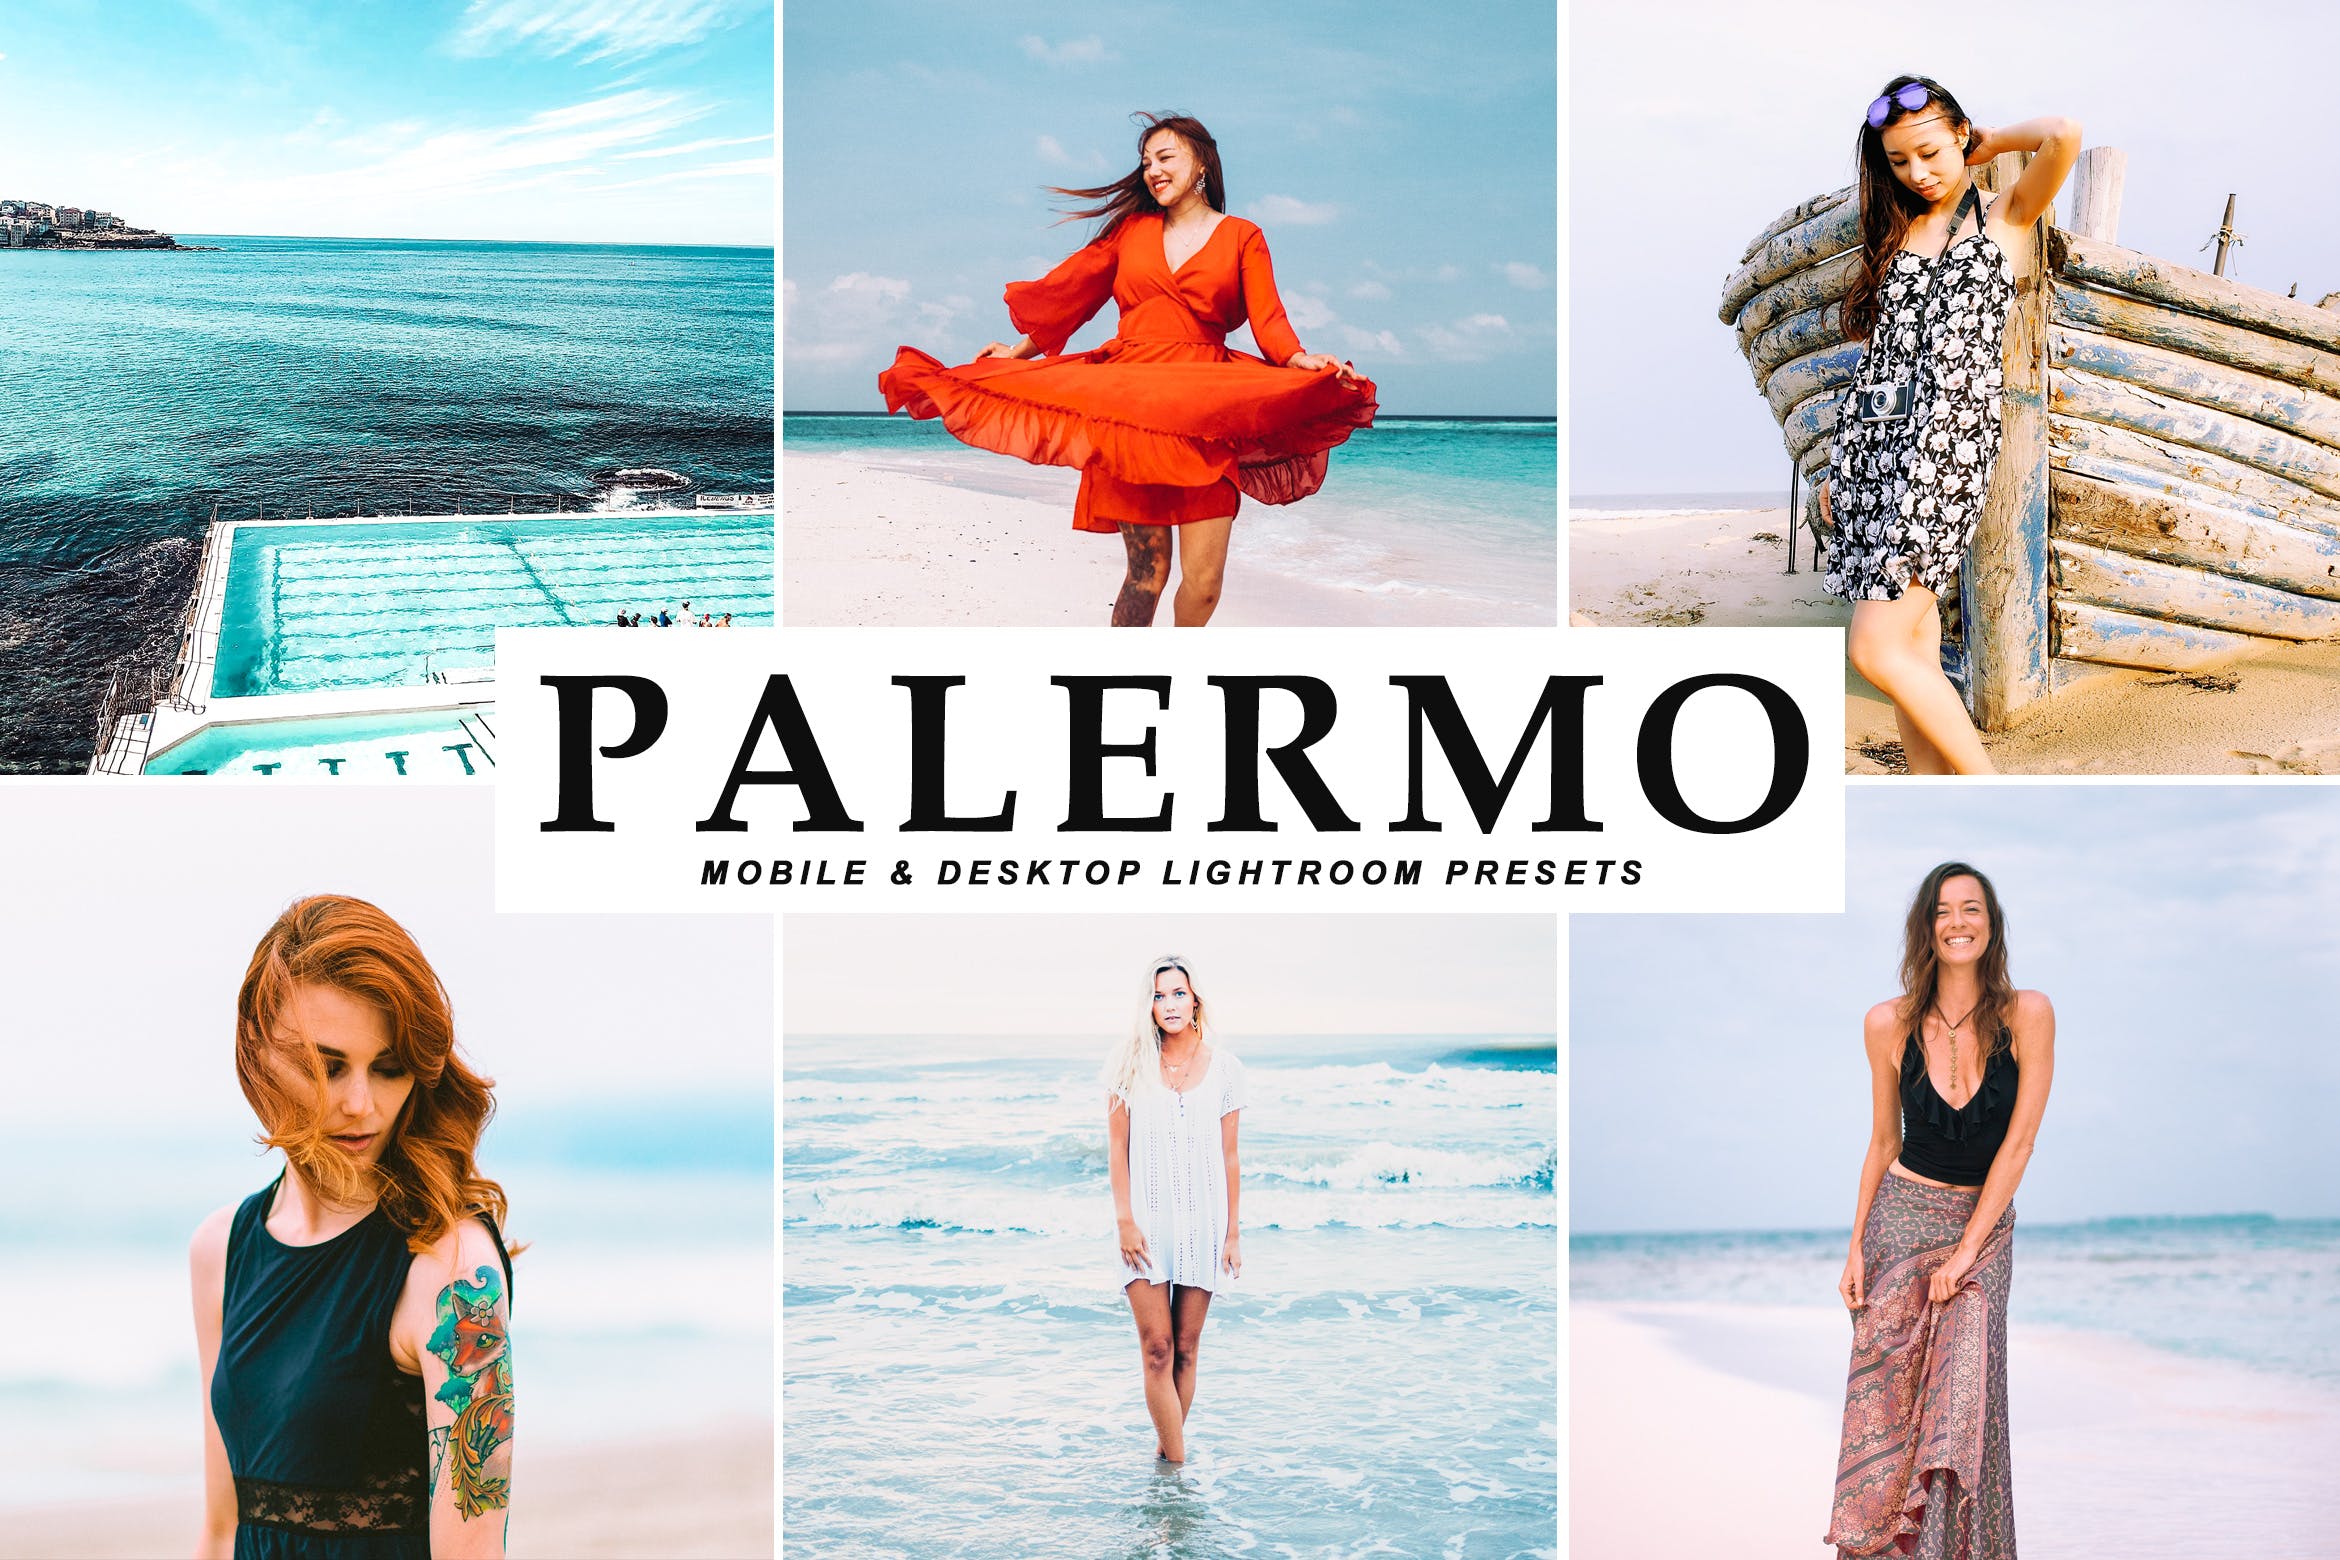 沙滩海岛阳光照片调色滤镜素材库精选LR预设 Palermo Mobile & Desktop Lightroom Presets插图